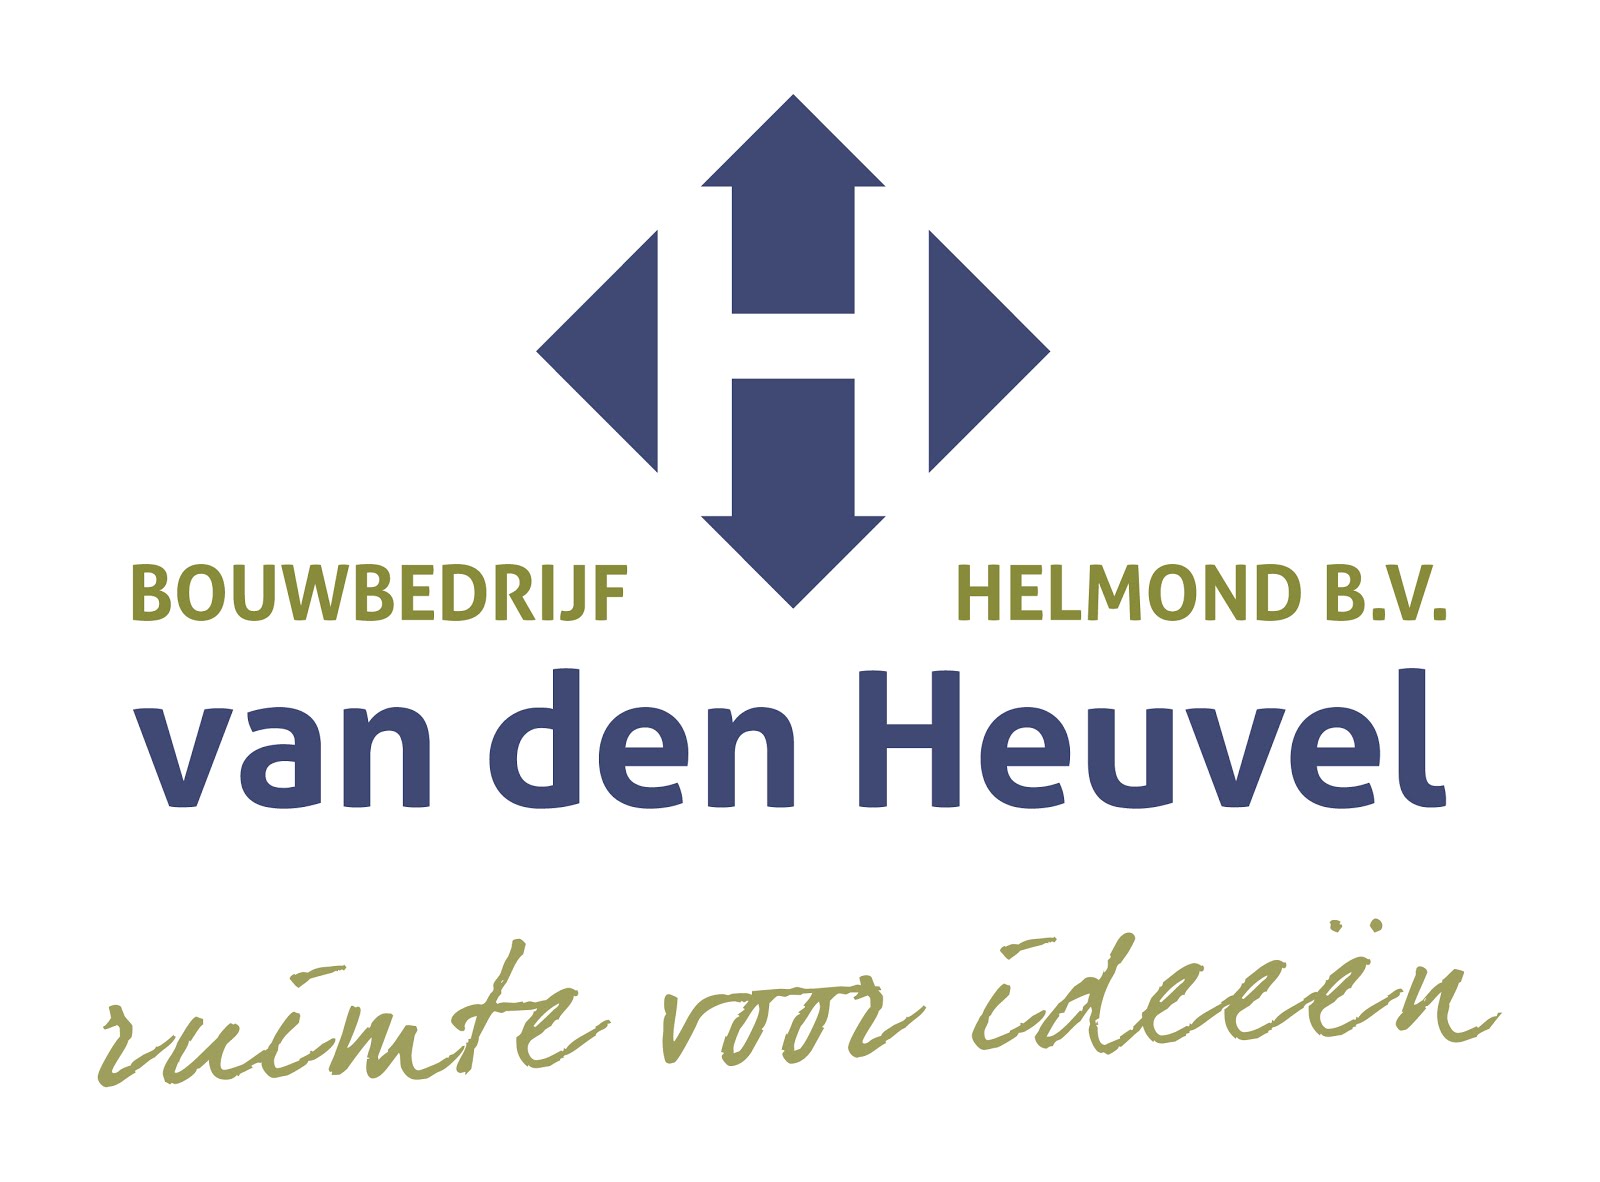 Bouwbedrijf Van den Heuvel